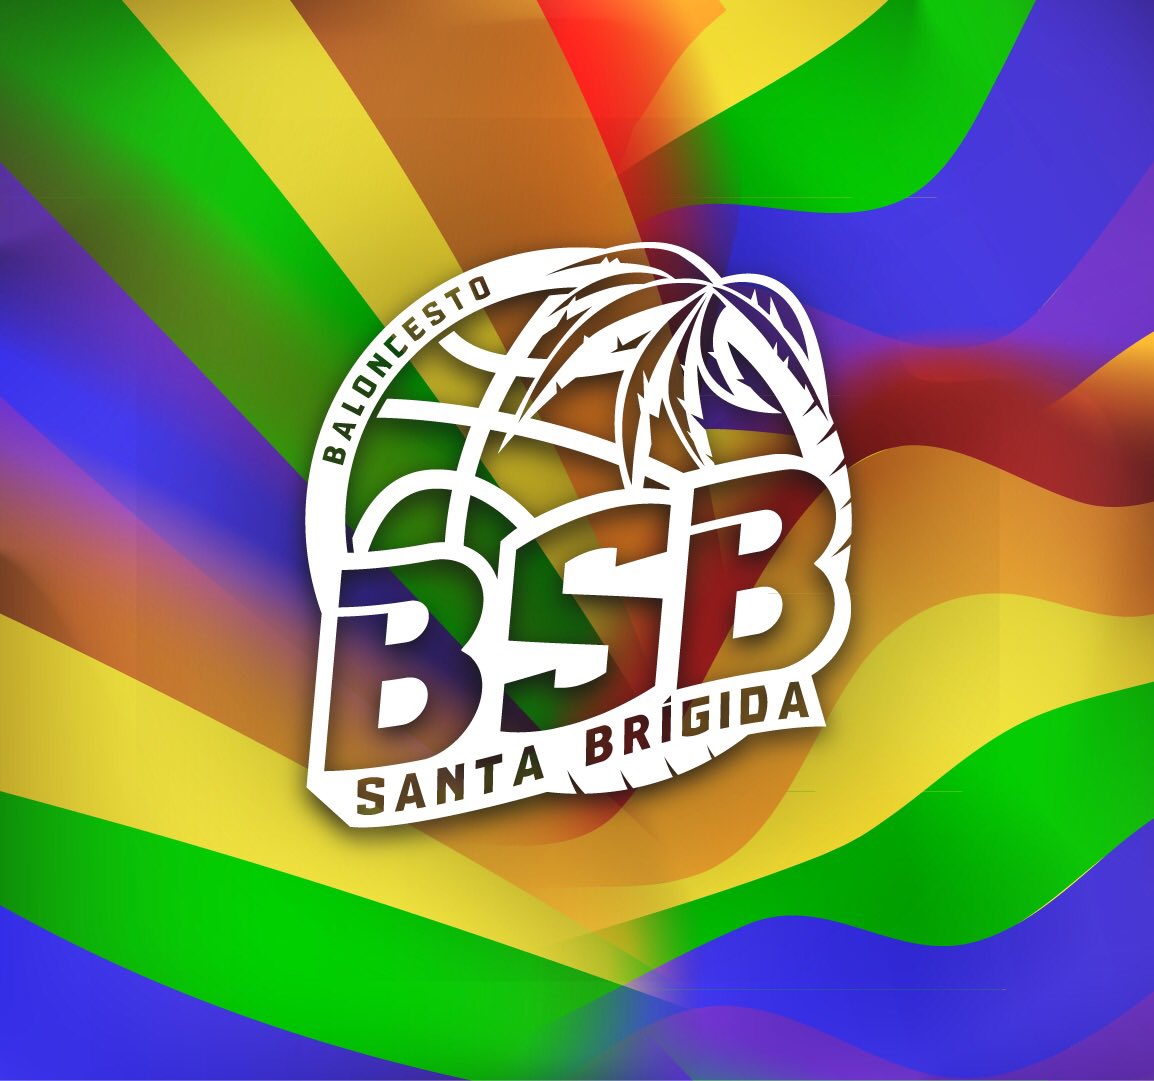 En este día del Orgullo LGTBI, queremos manifestar nuestro apoyo y compromiso con la diversidad y la inclusión. En nuestro club, visualizamos y celebramos la igualdad en el deporte. 💜🌈 #OrgulloLGTBI #Diversidad #Inclusión #AmorSinEtiquetas #Visualización #bsbgreenpower 💚